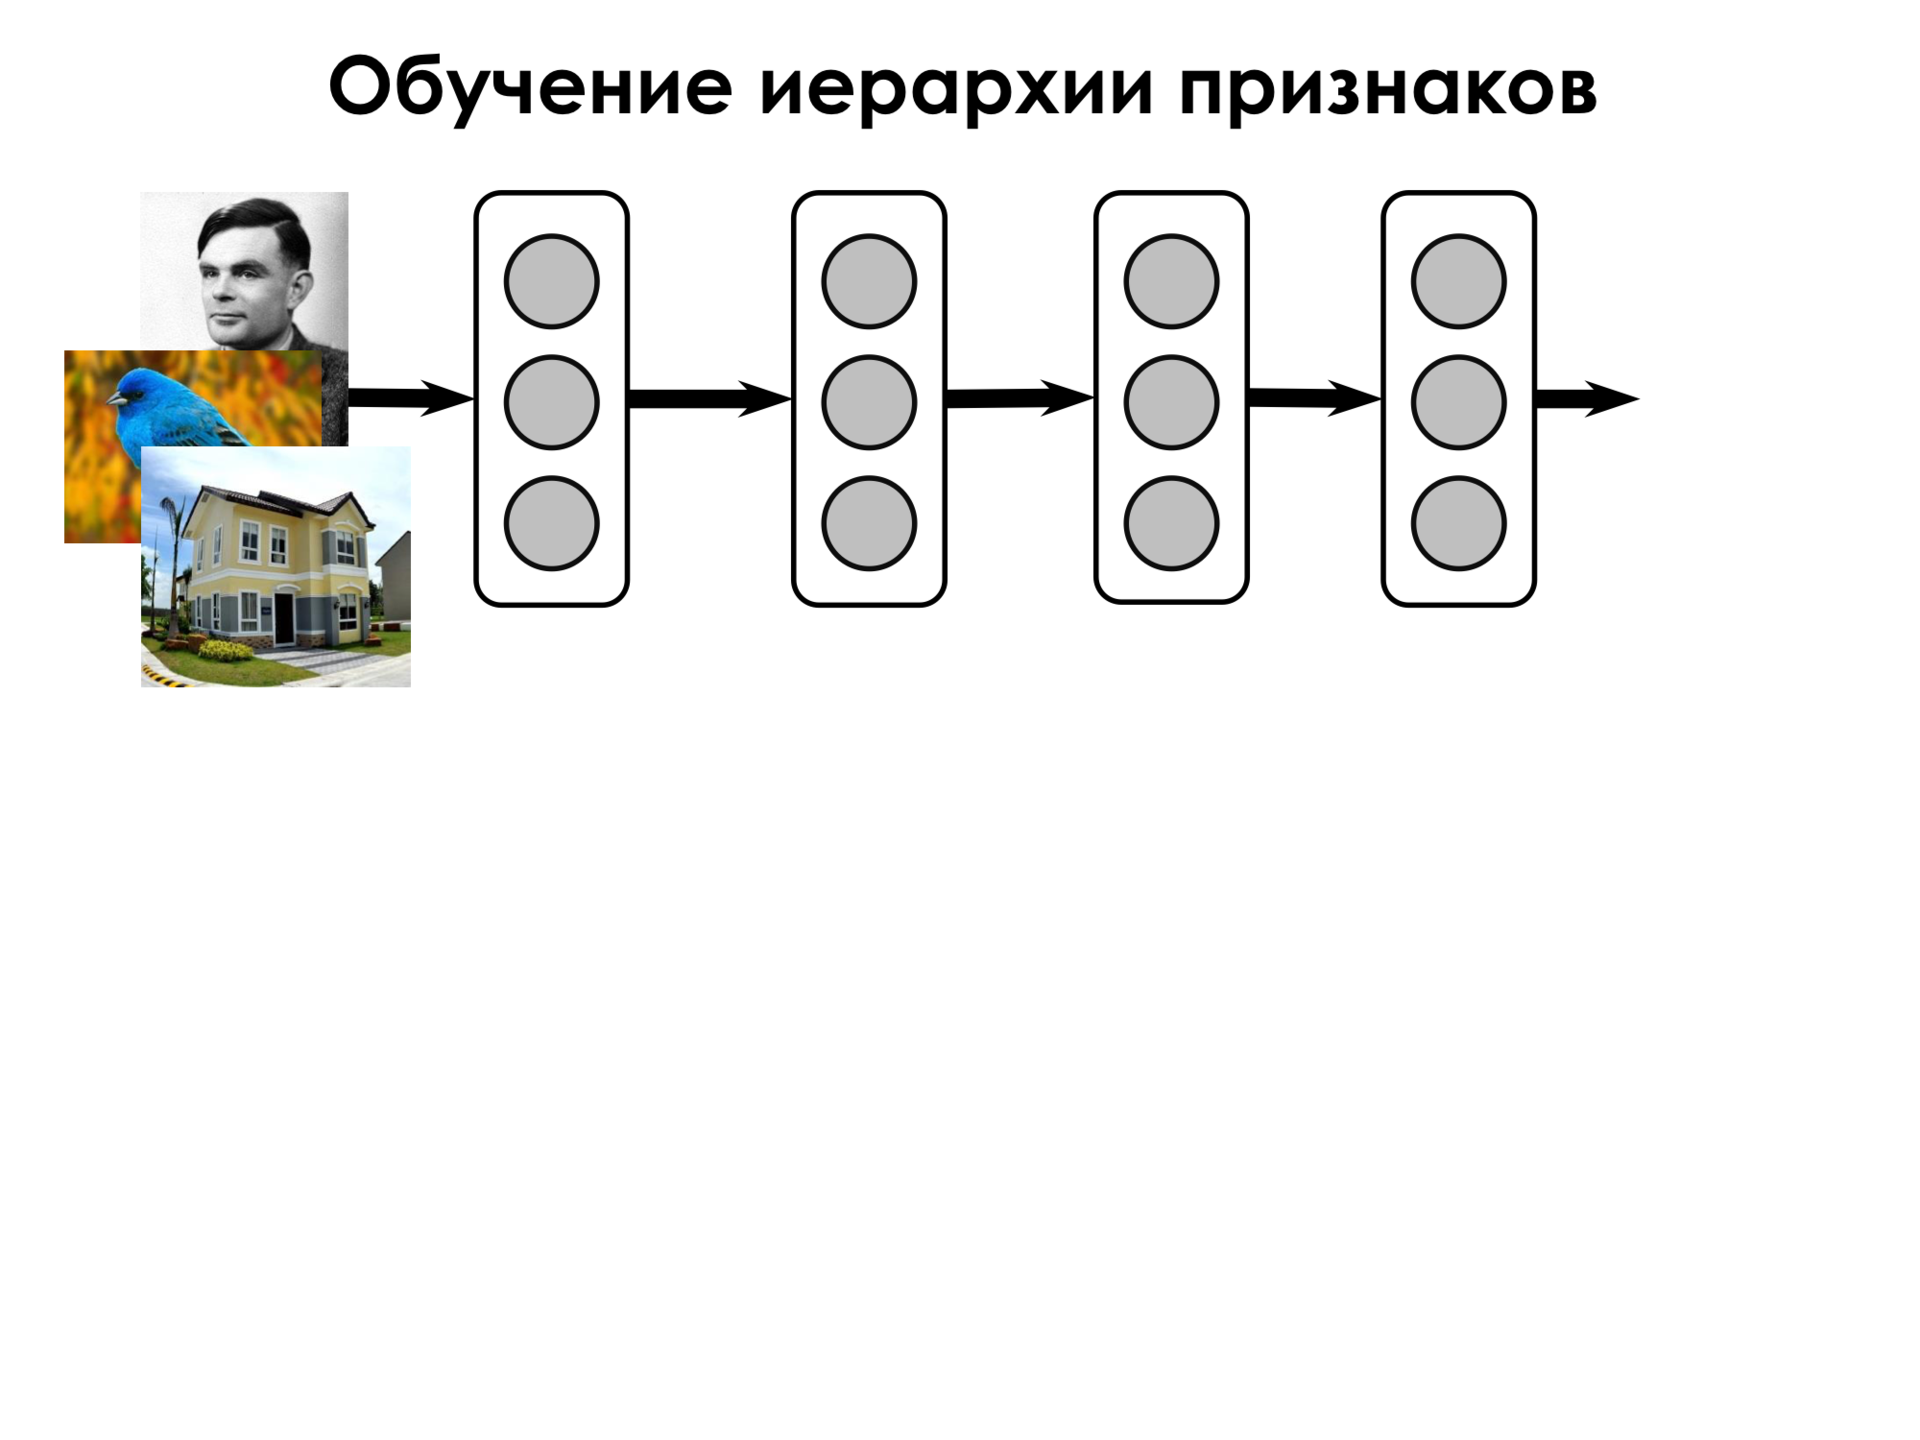 Самое главное о нейронных сетях. Лекция в Яндексе - 18